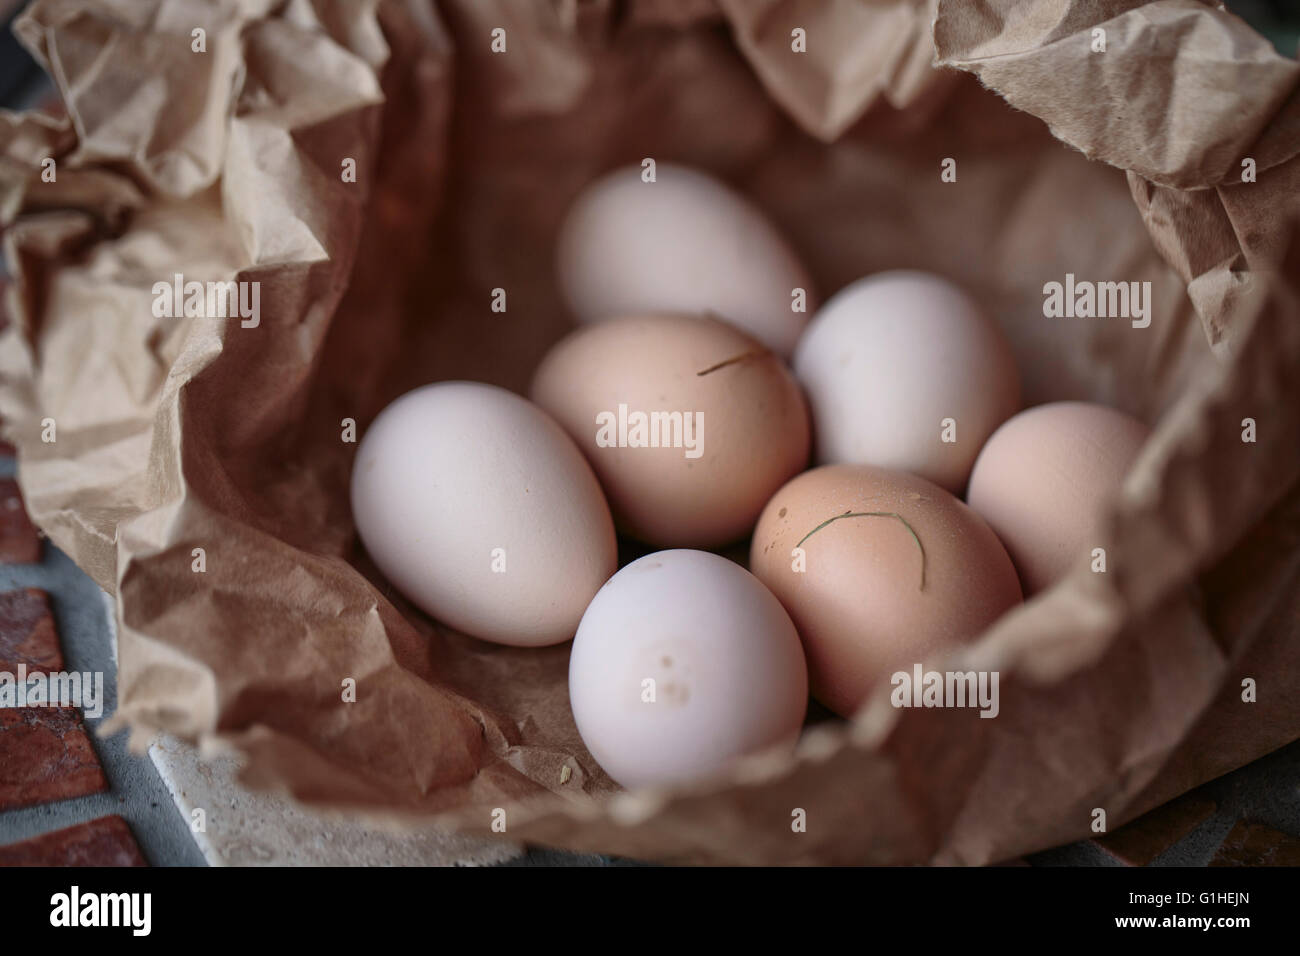 Los huevos de gallina frescos de roaming gratuito en animales de granja italiana Foto de stock